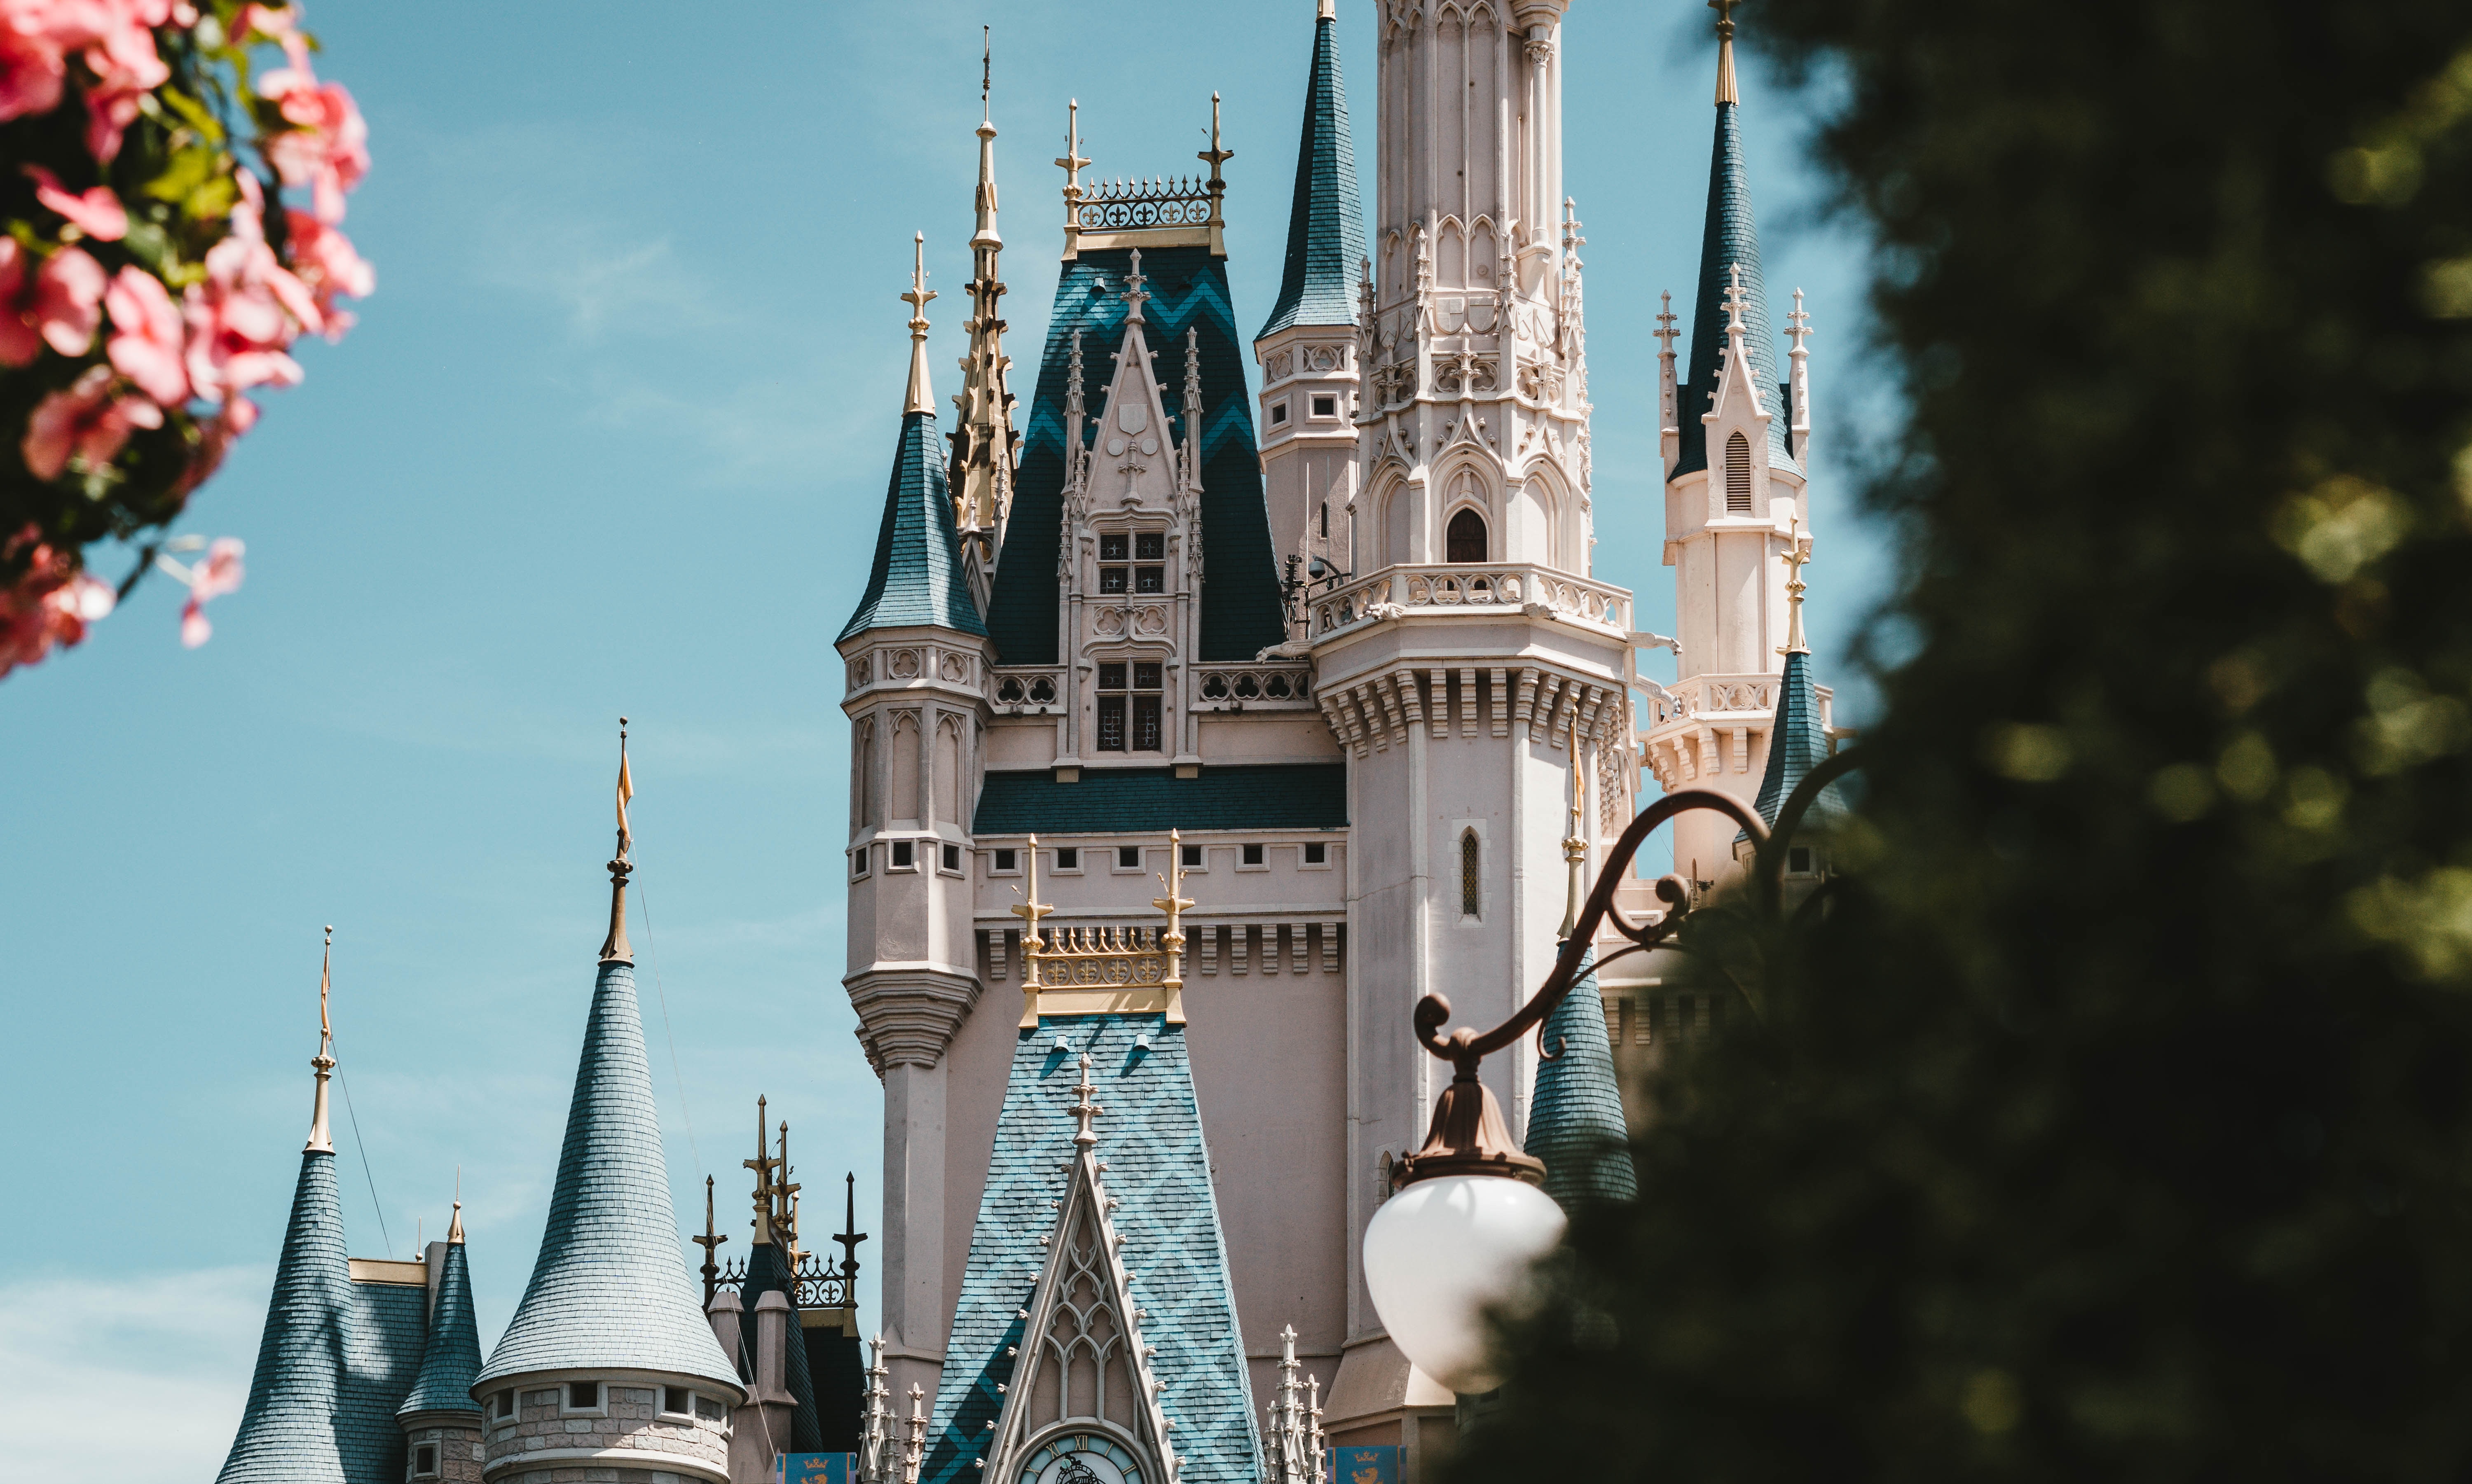 Cinderella Castle Walt Disney World Magic Kingdom